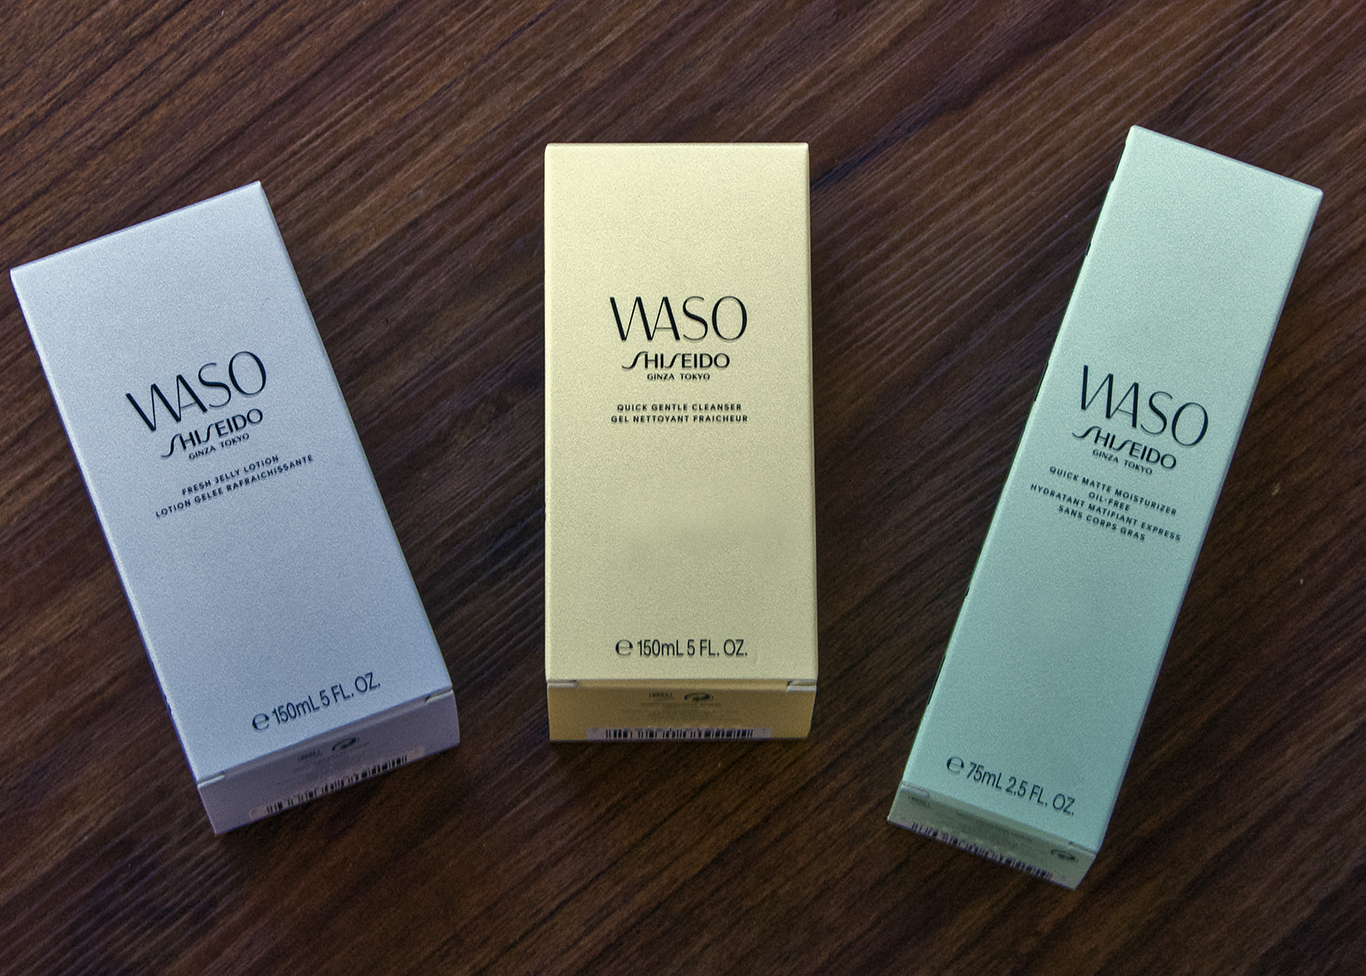 Shiseido Waso: recensione (autentica) sulla nuovissima linea di prodotti skincare